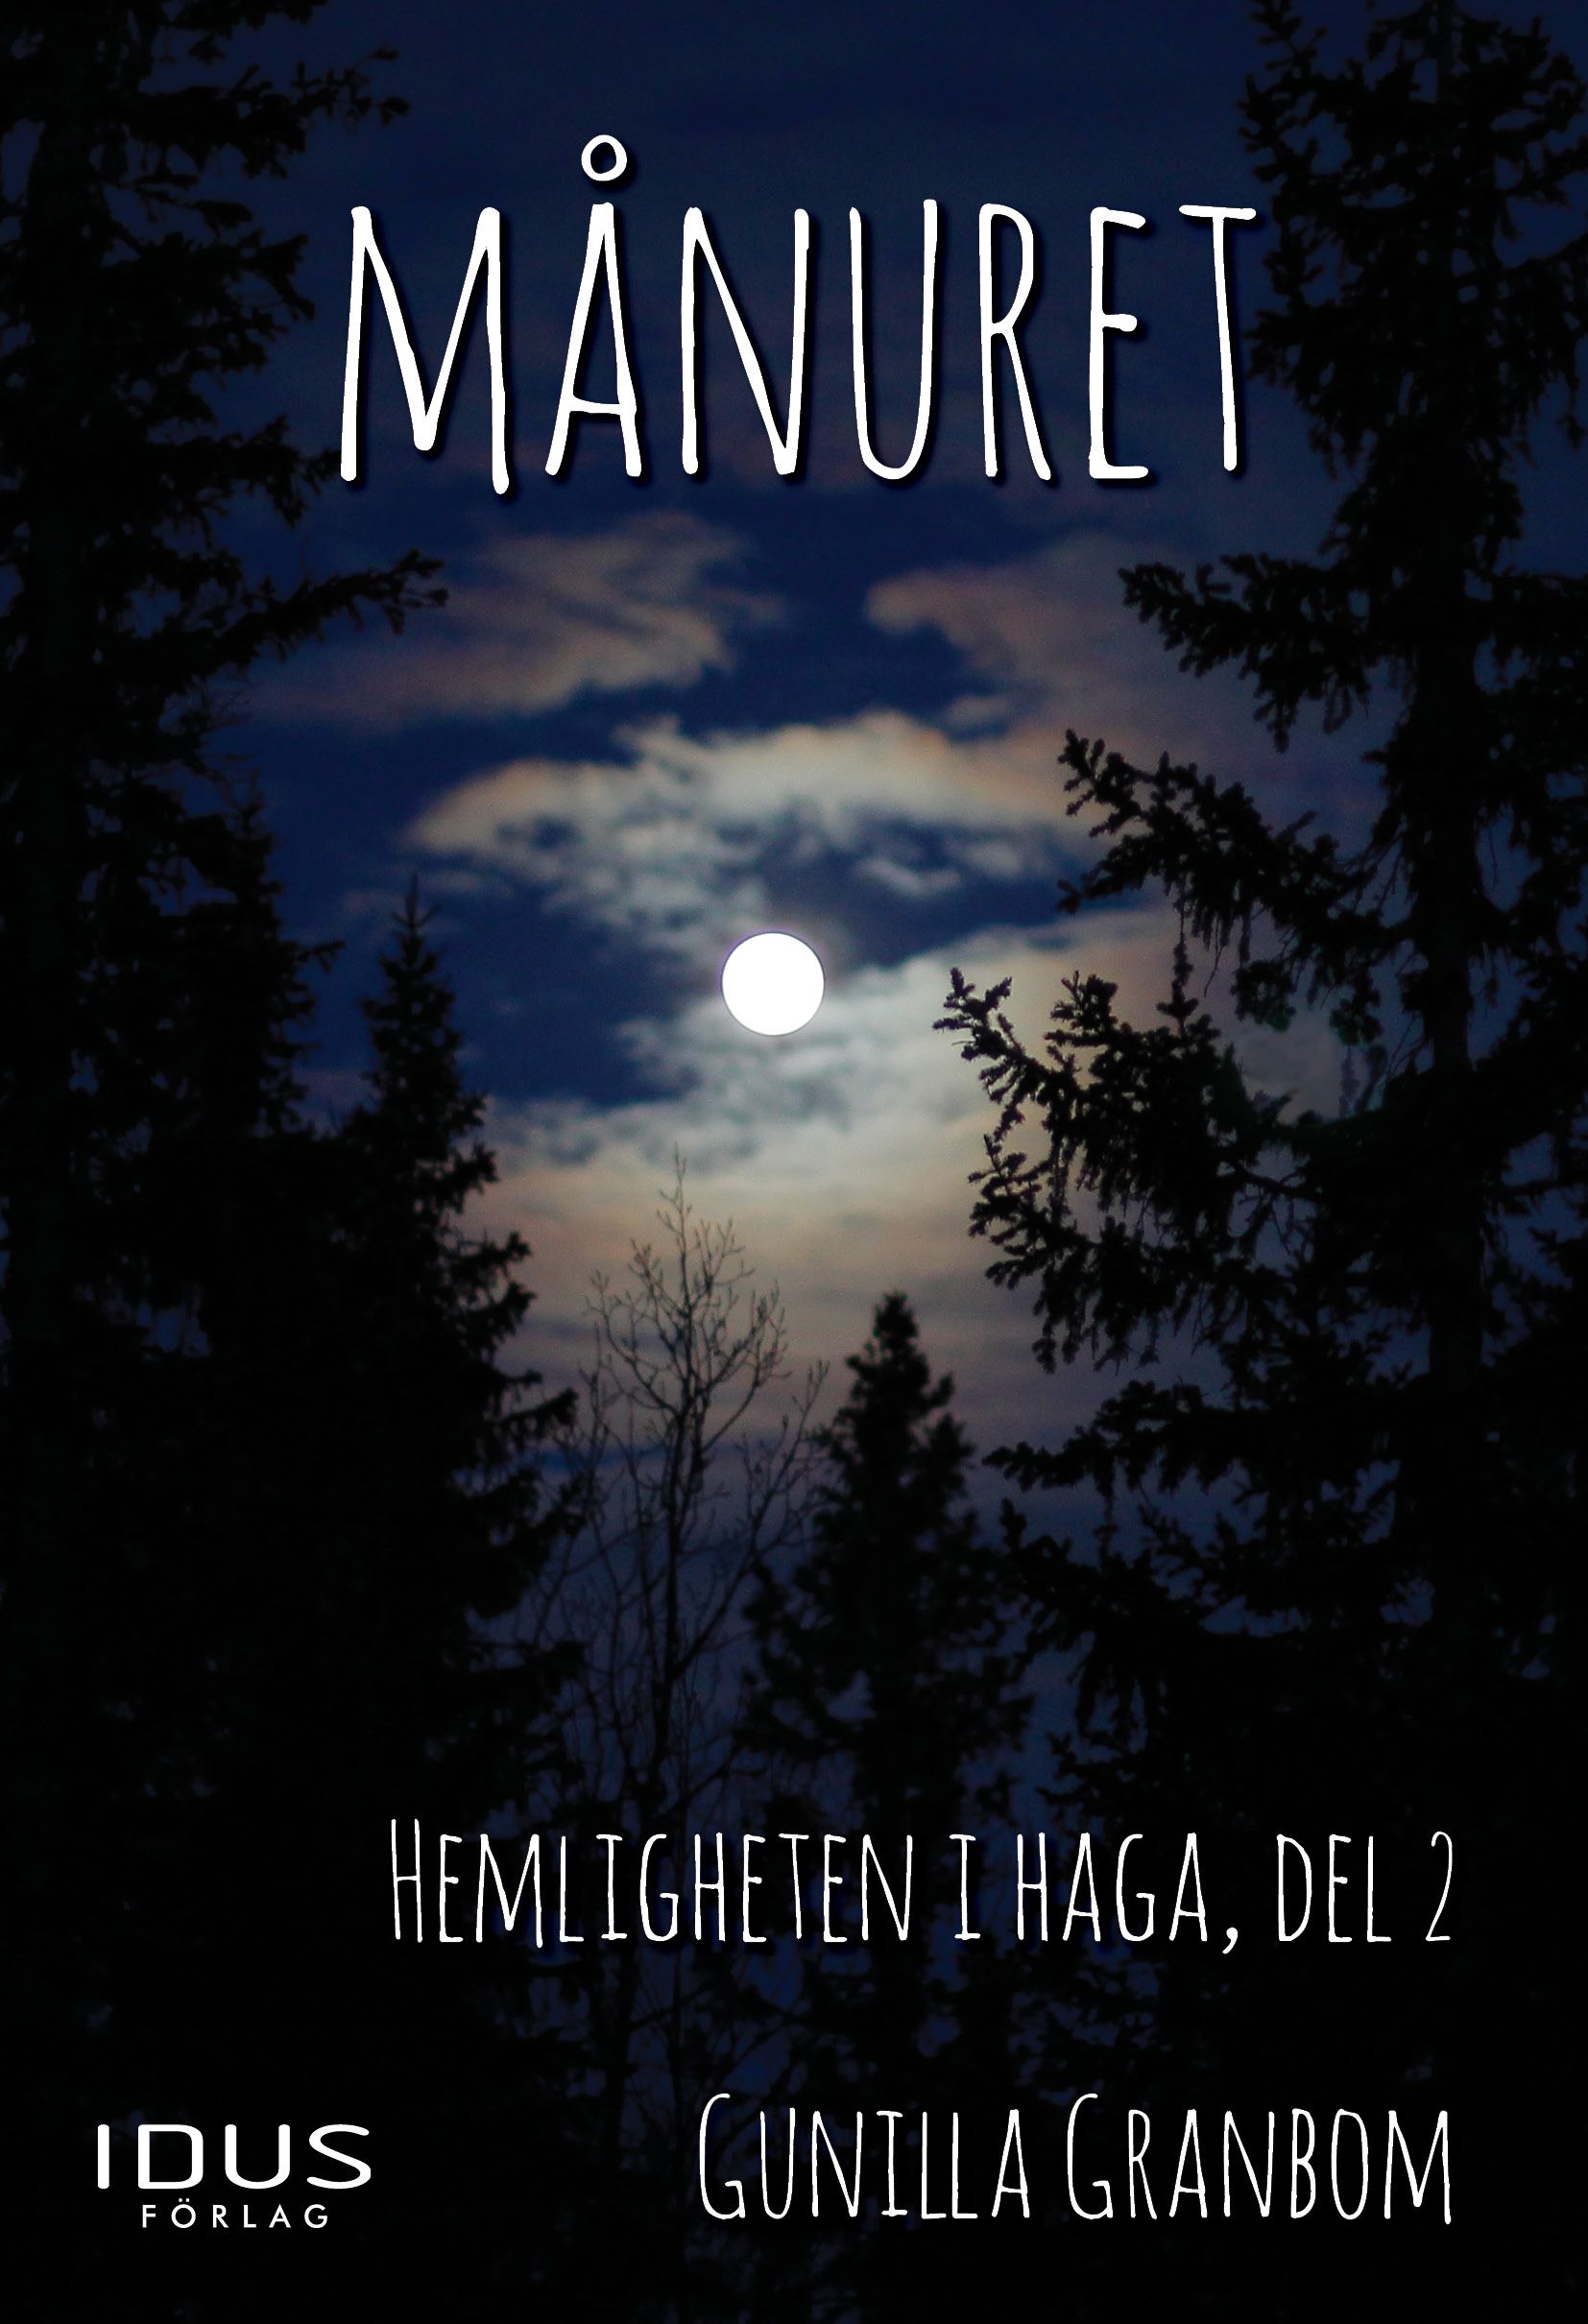 Månuret, eBook by Gunilla Granbom